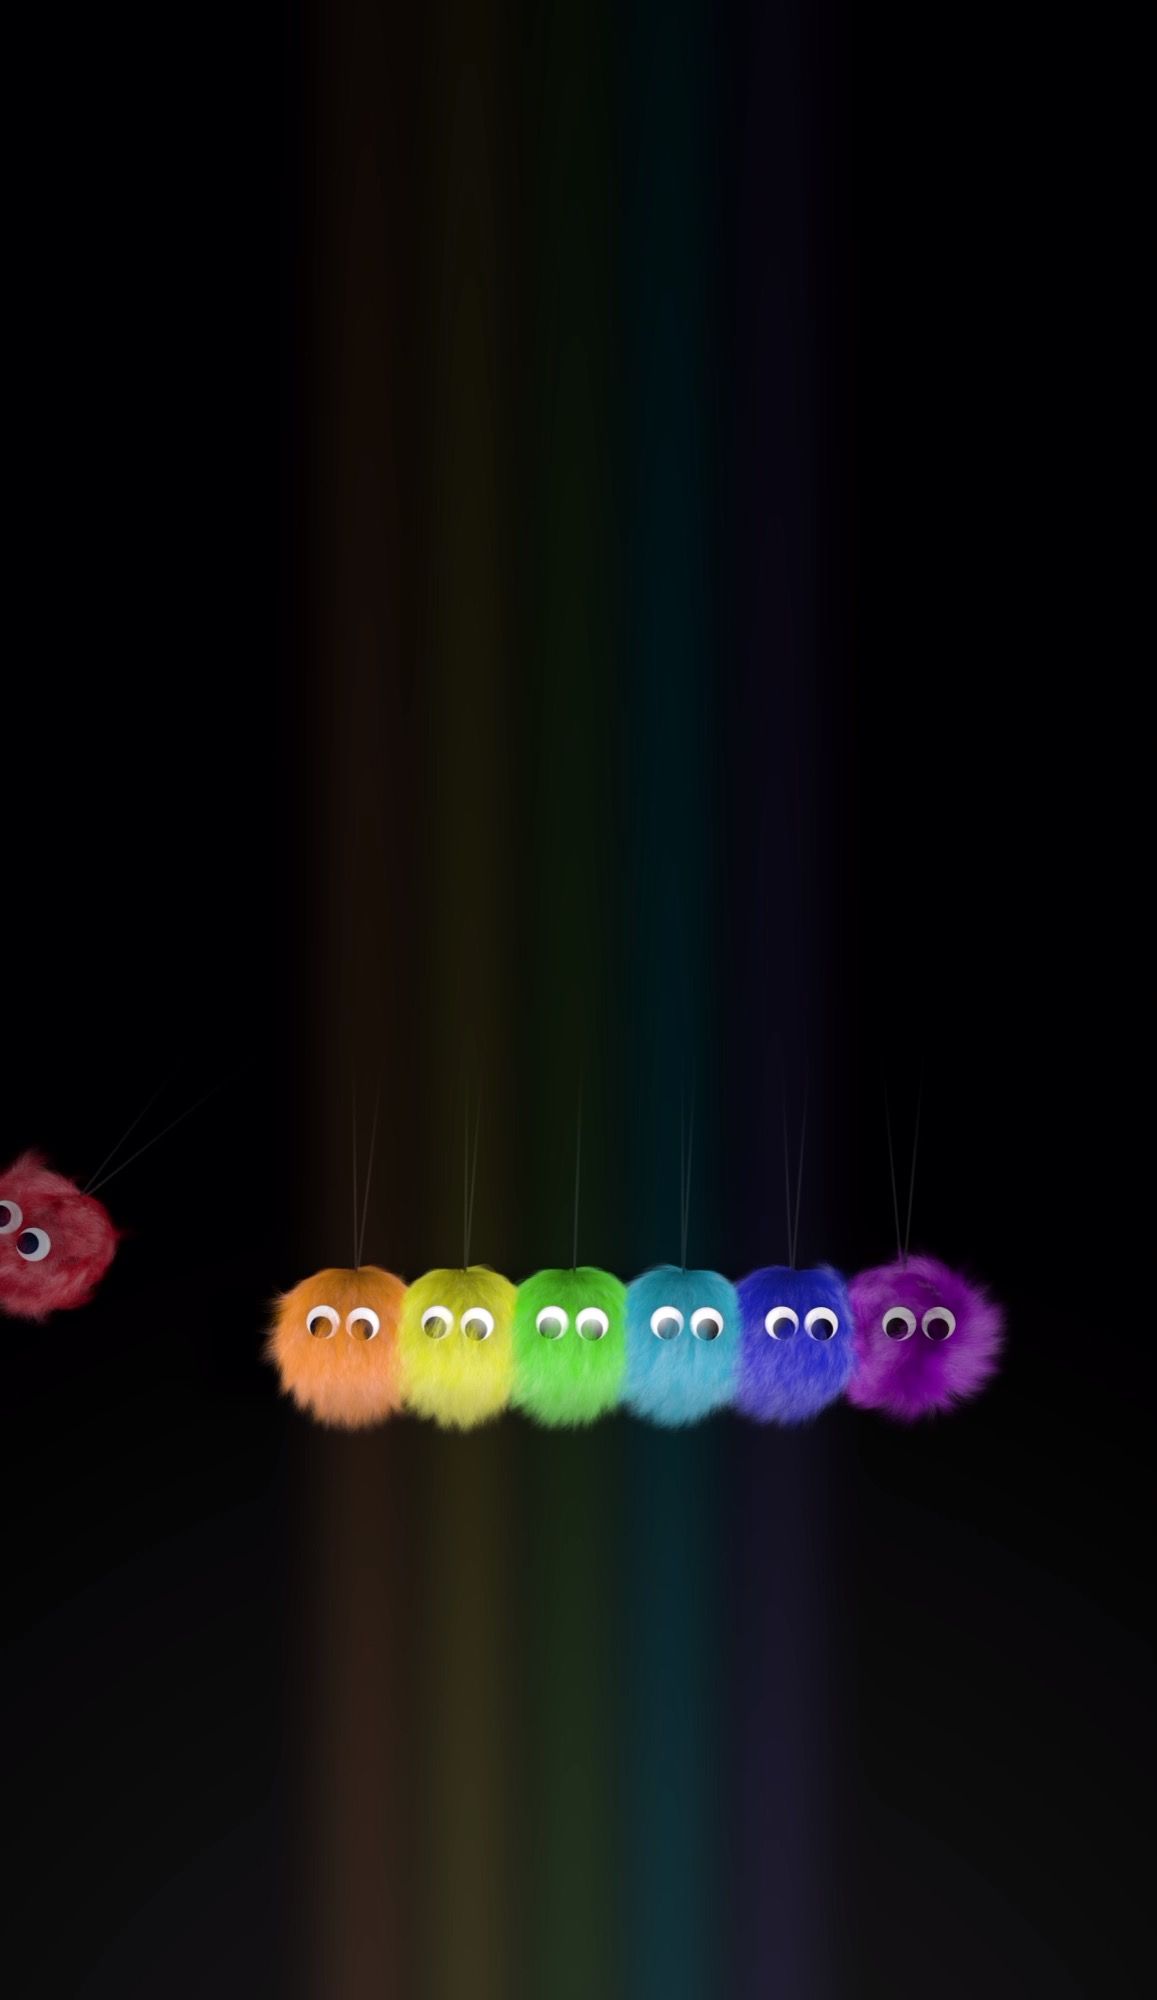 Fuzzy Rainbow Pride